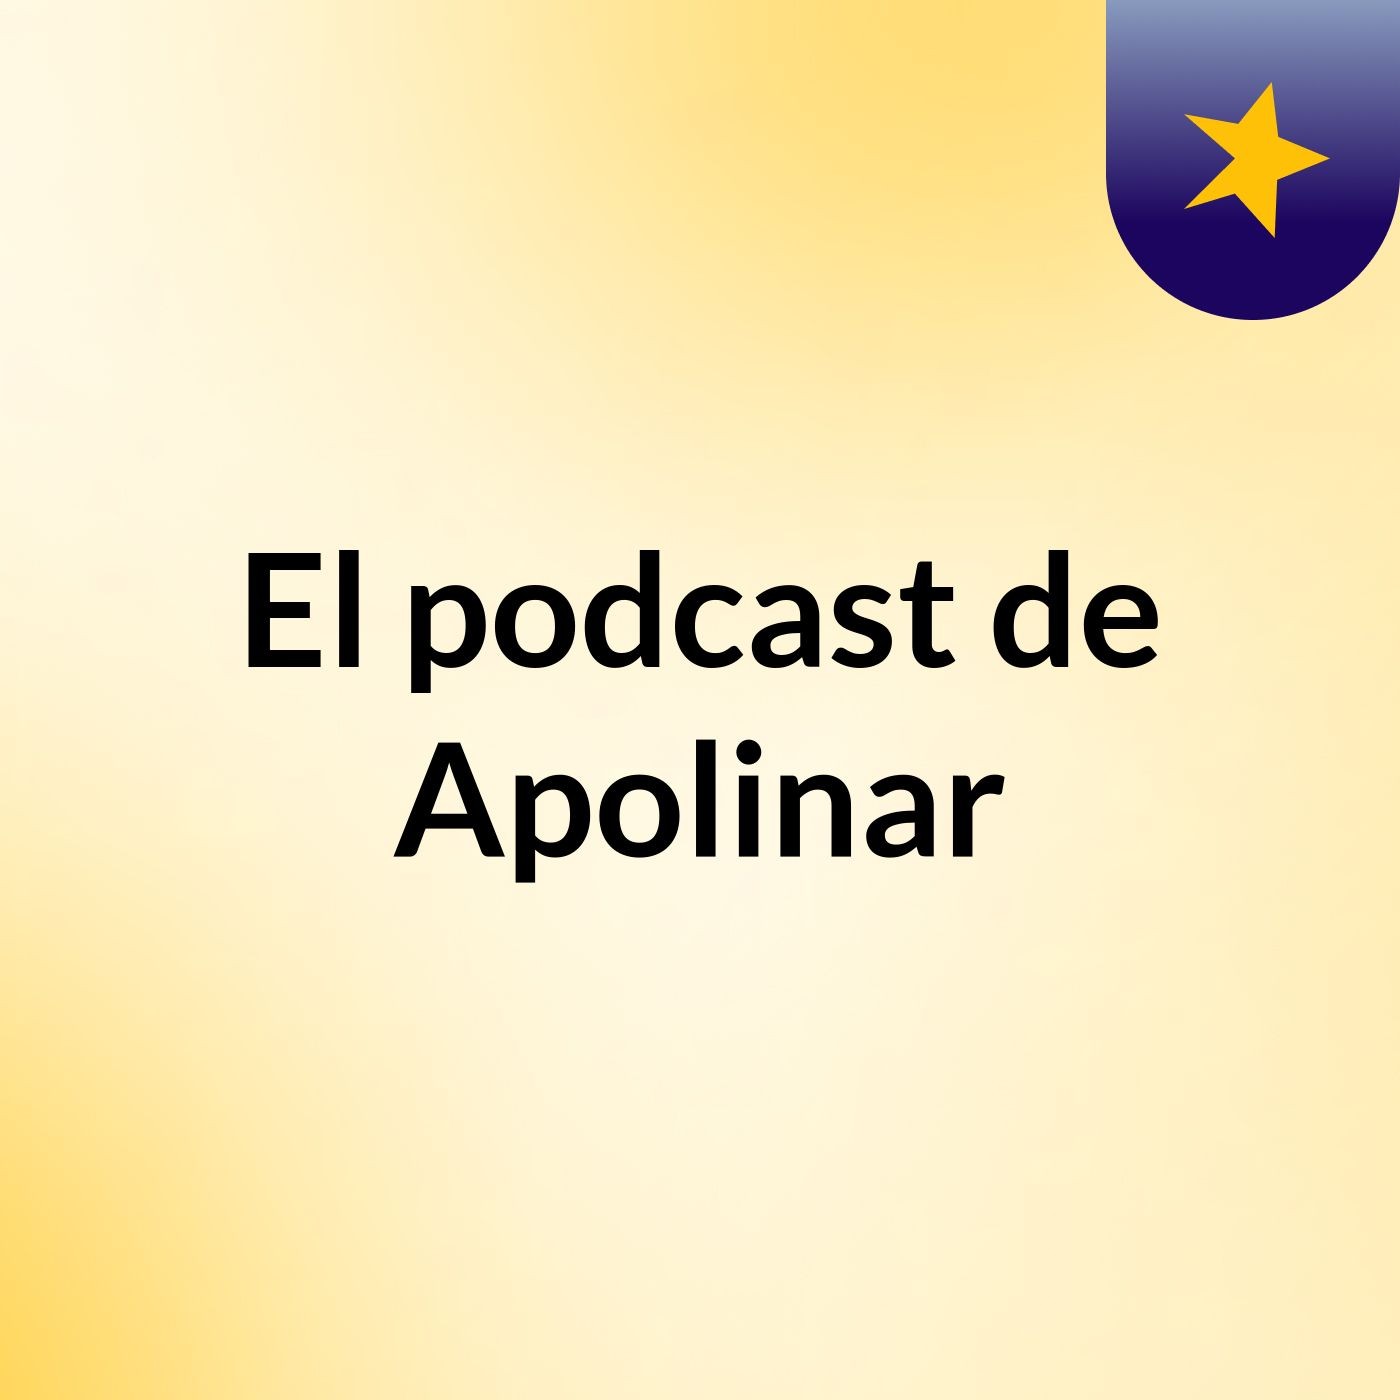 Episodio 13 - El podcast de Apolinar